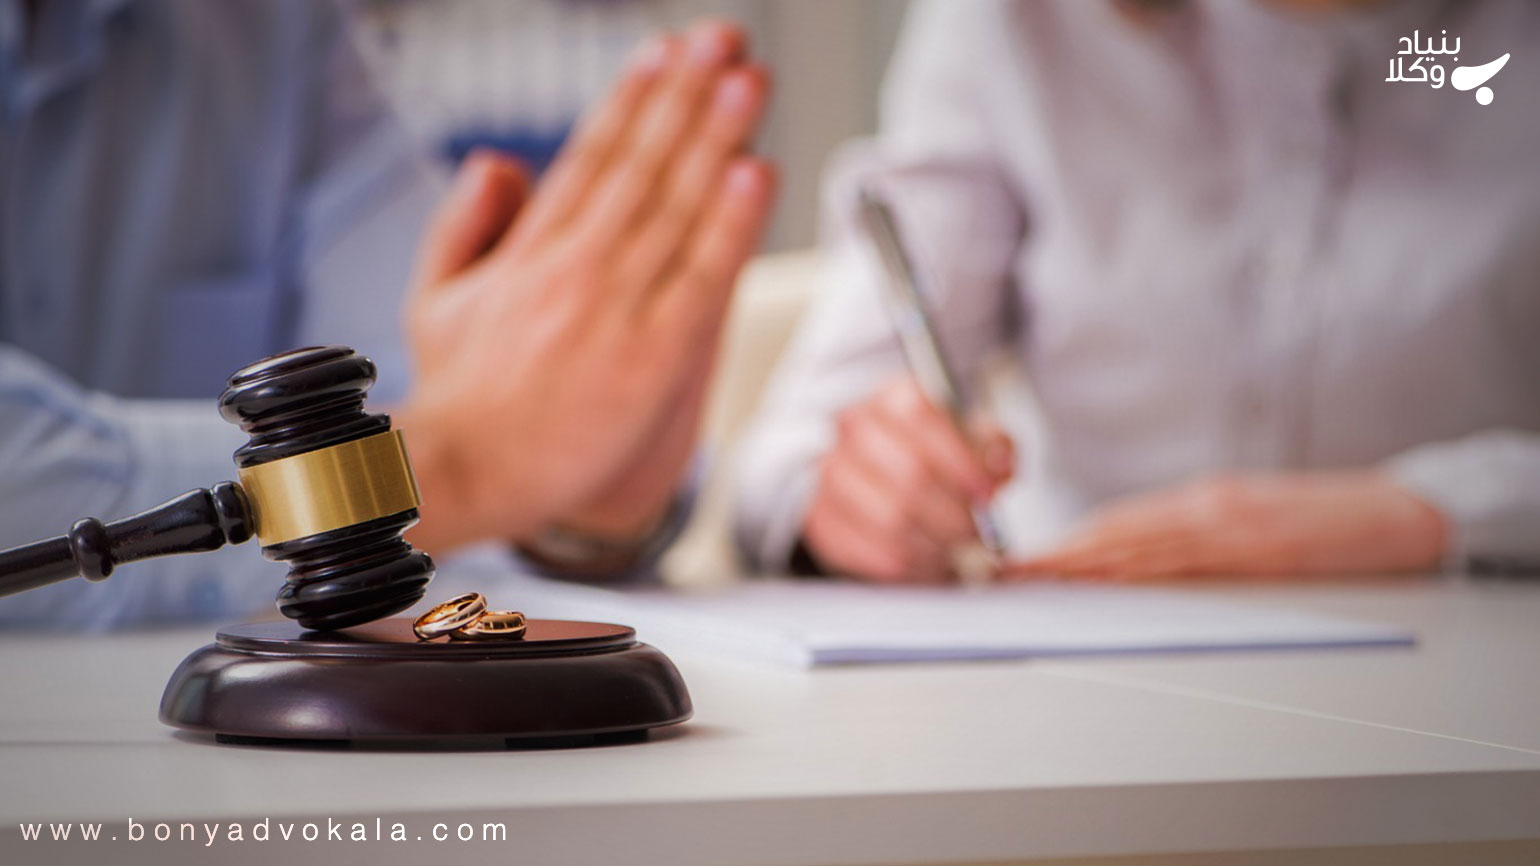 طلاق به دلیل نداشتن روابط زناشویی یا رابطه زوجین بنیاد وکلا